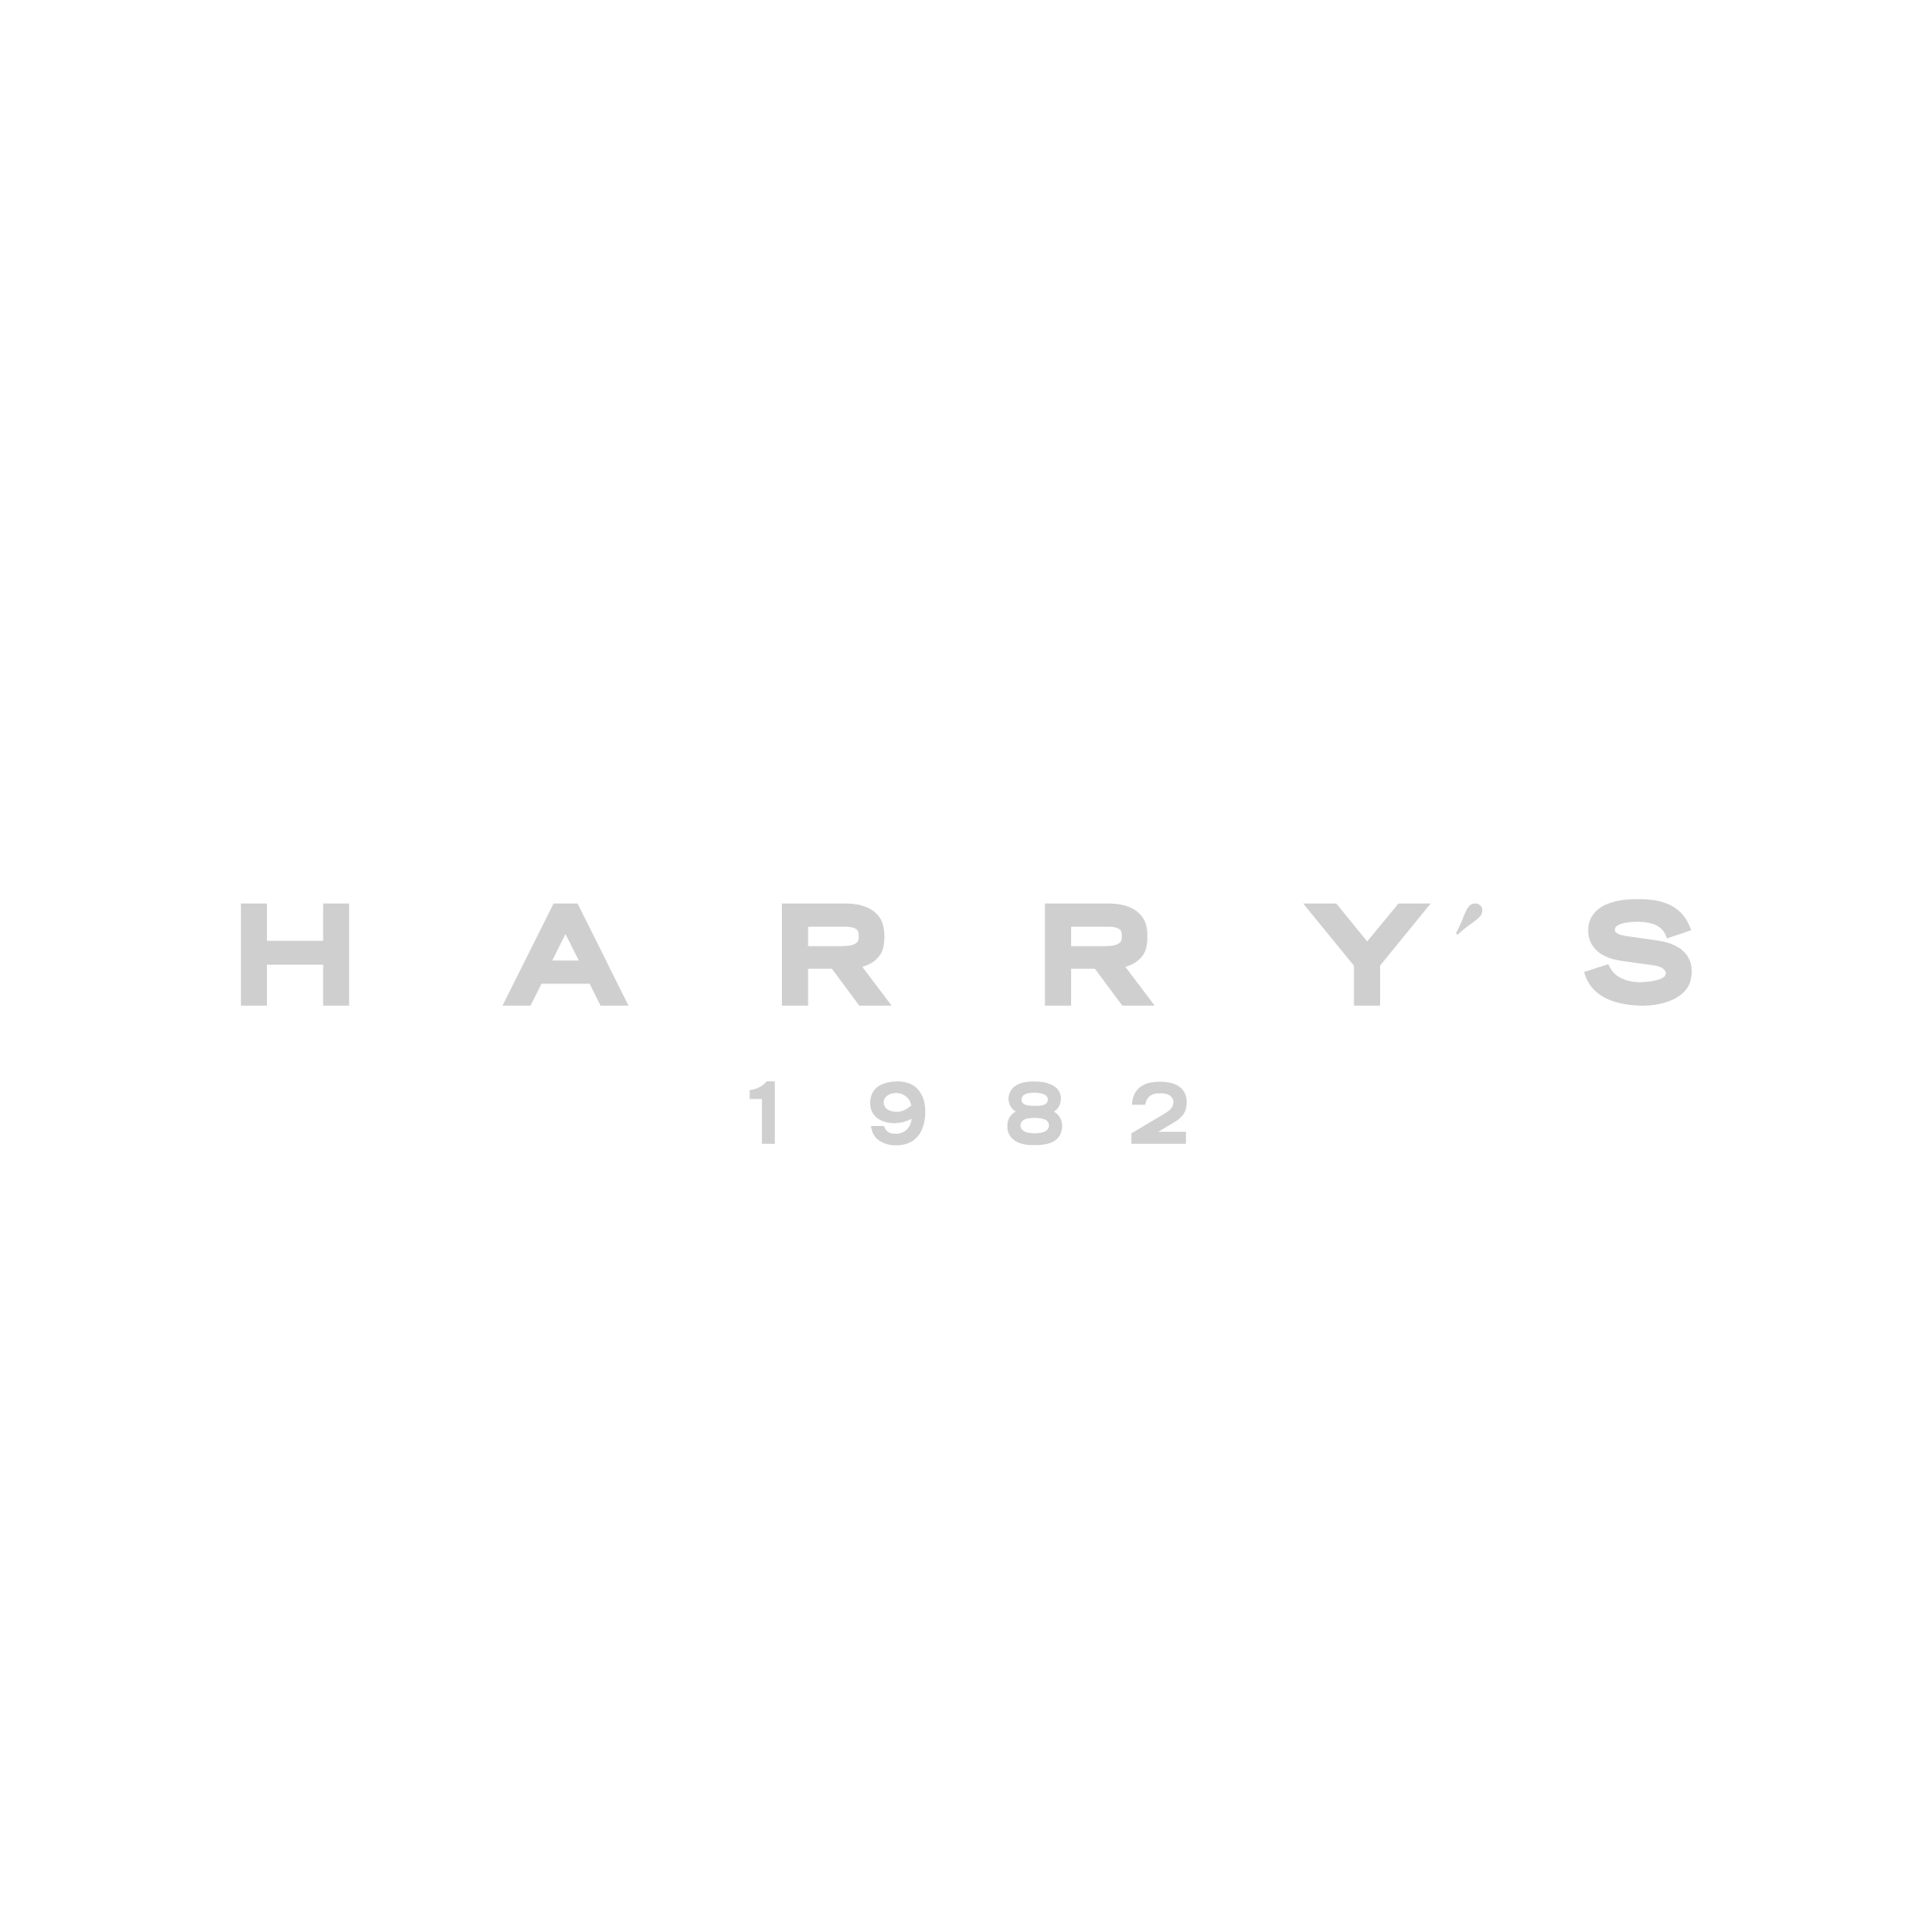 LOGO HARRYS 1982